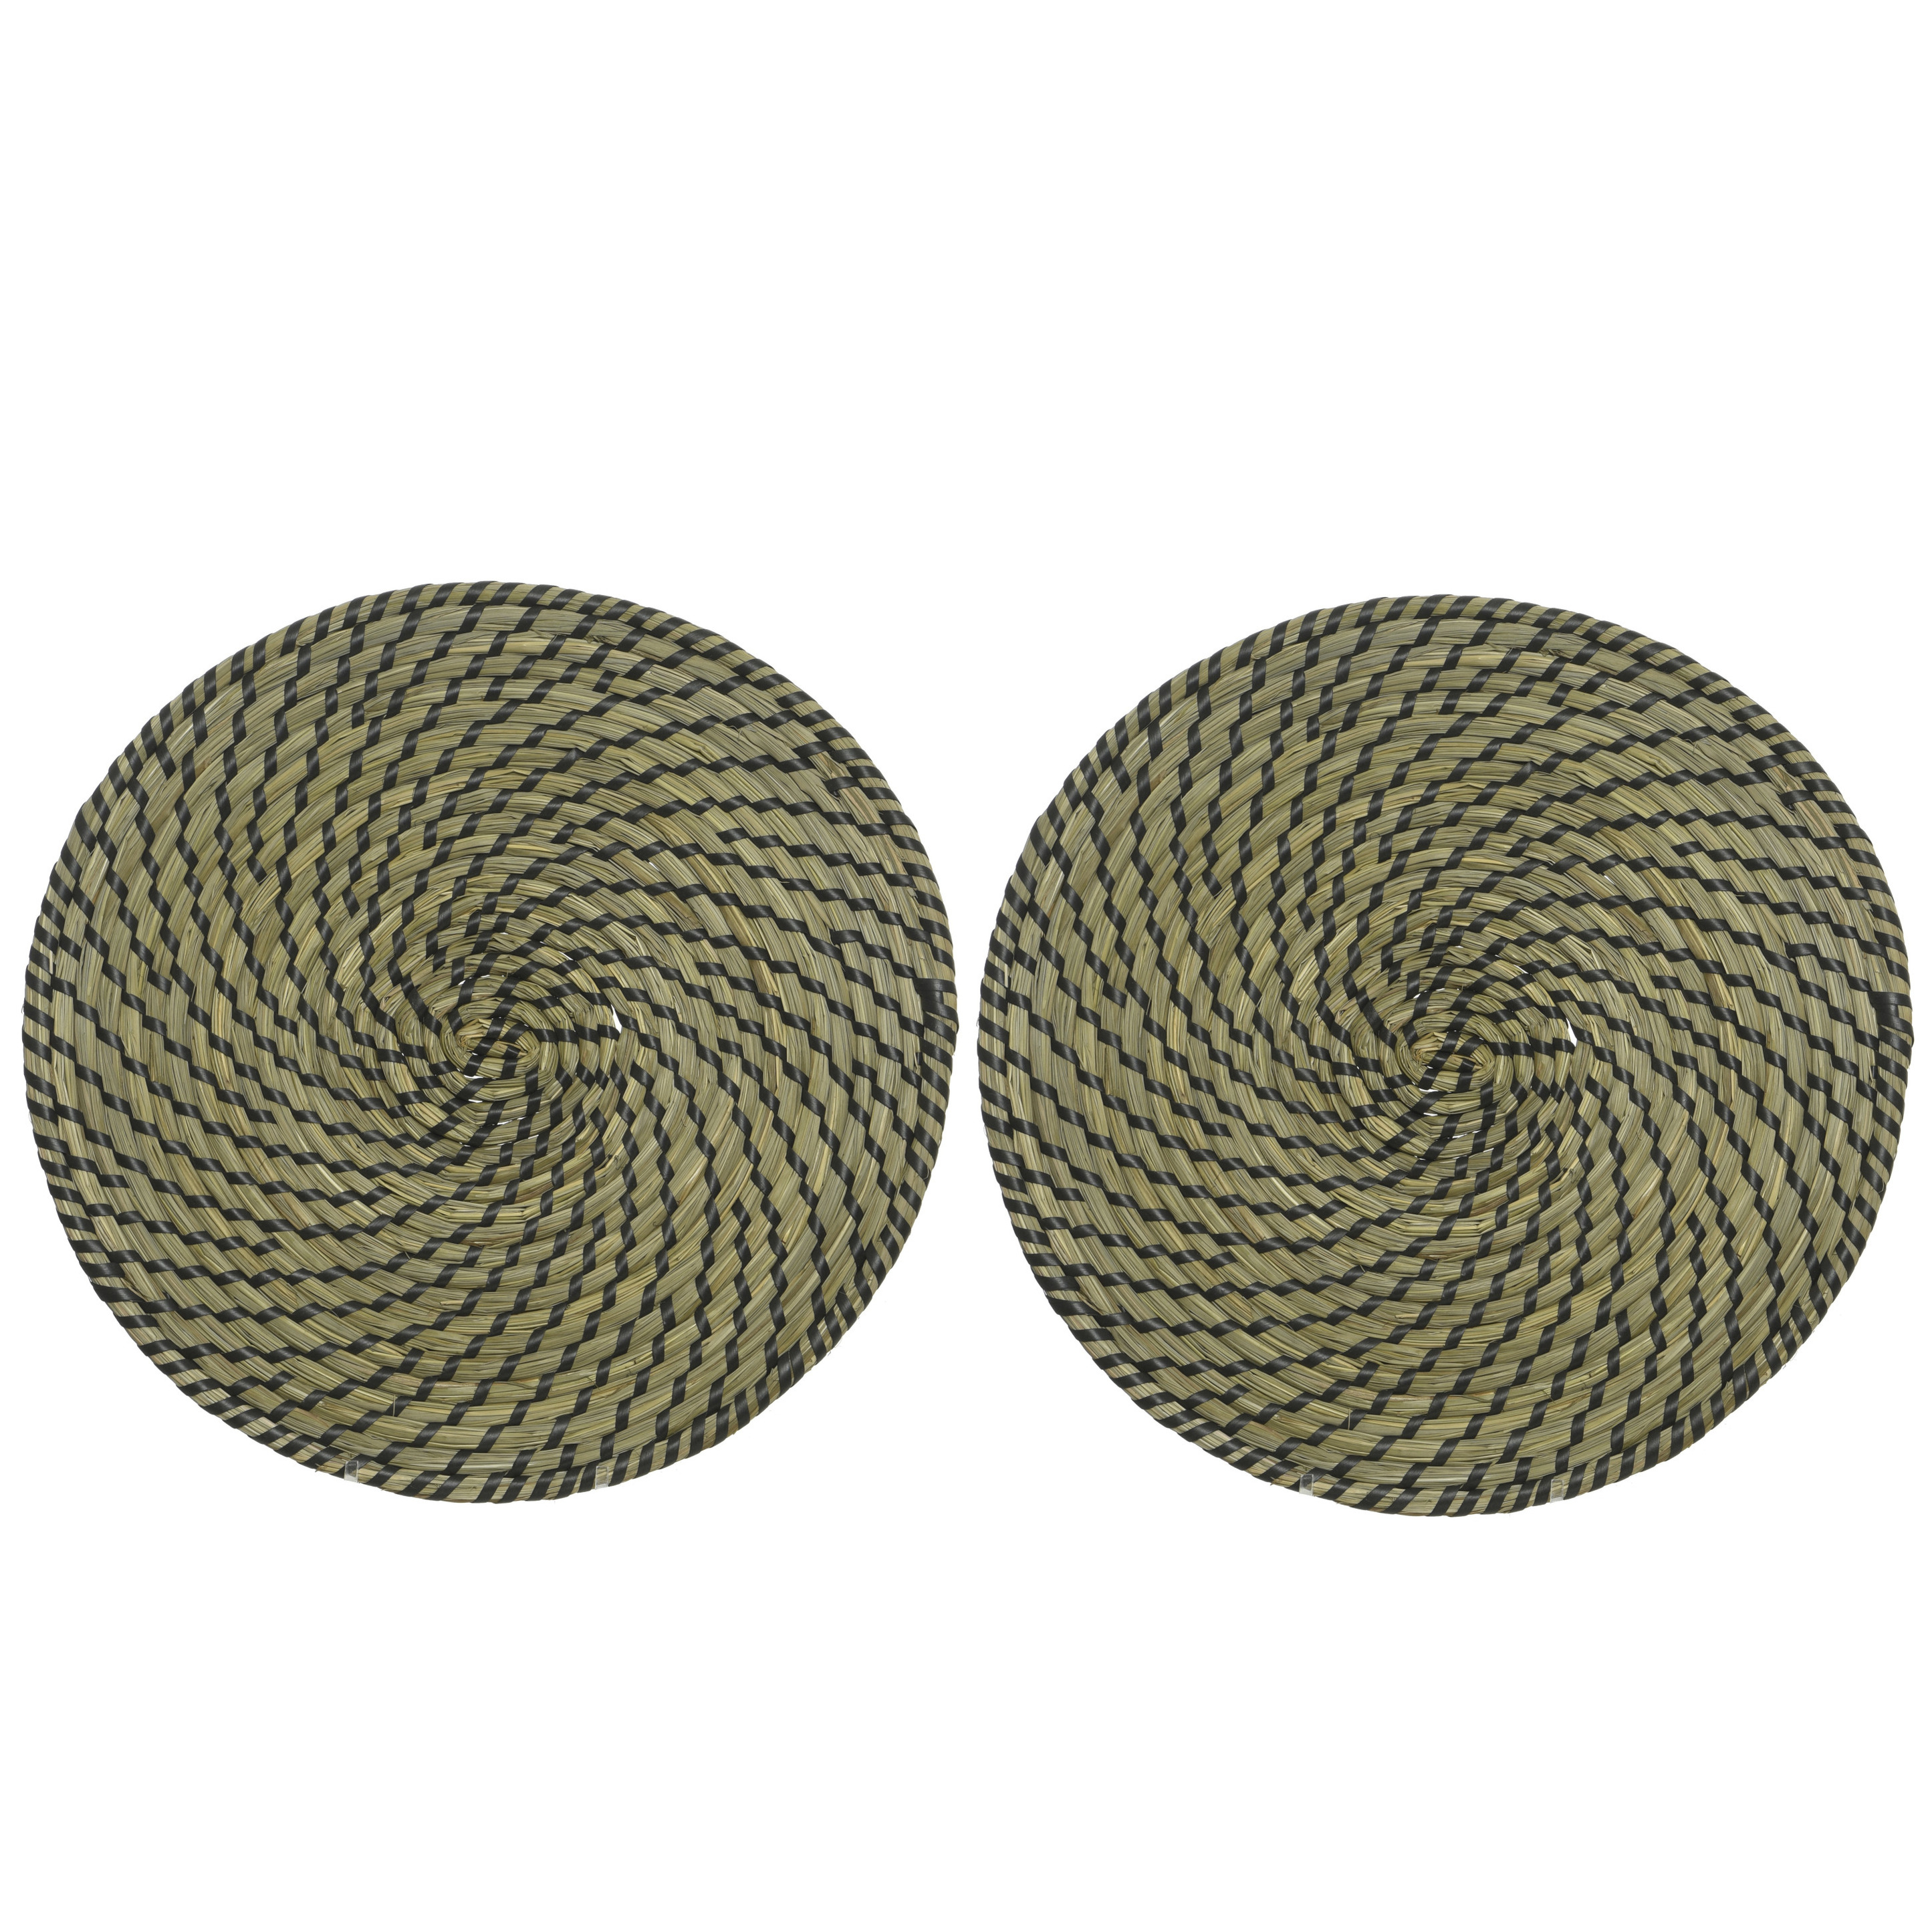 10x stuks placemats rond groen/zwart zeegras 38 cm -